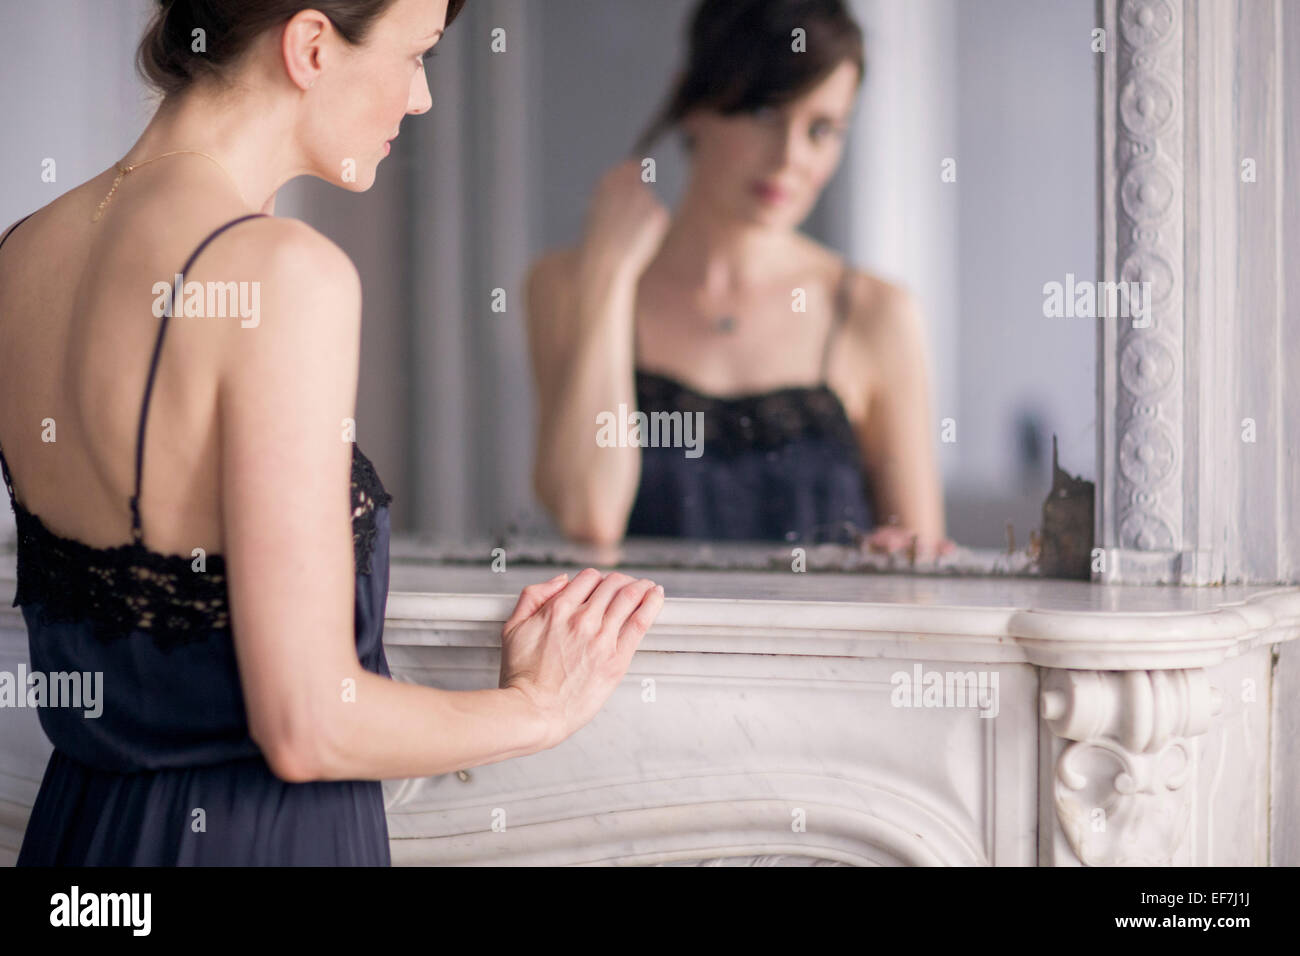 La reflexión de una mujer en el espejo Foto de stock